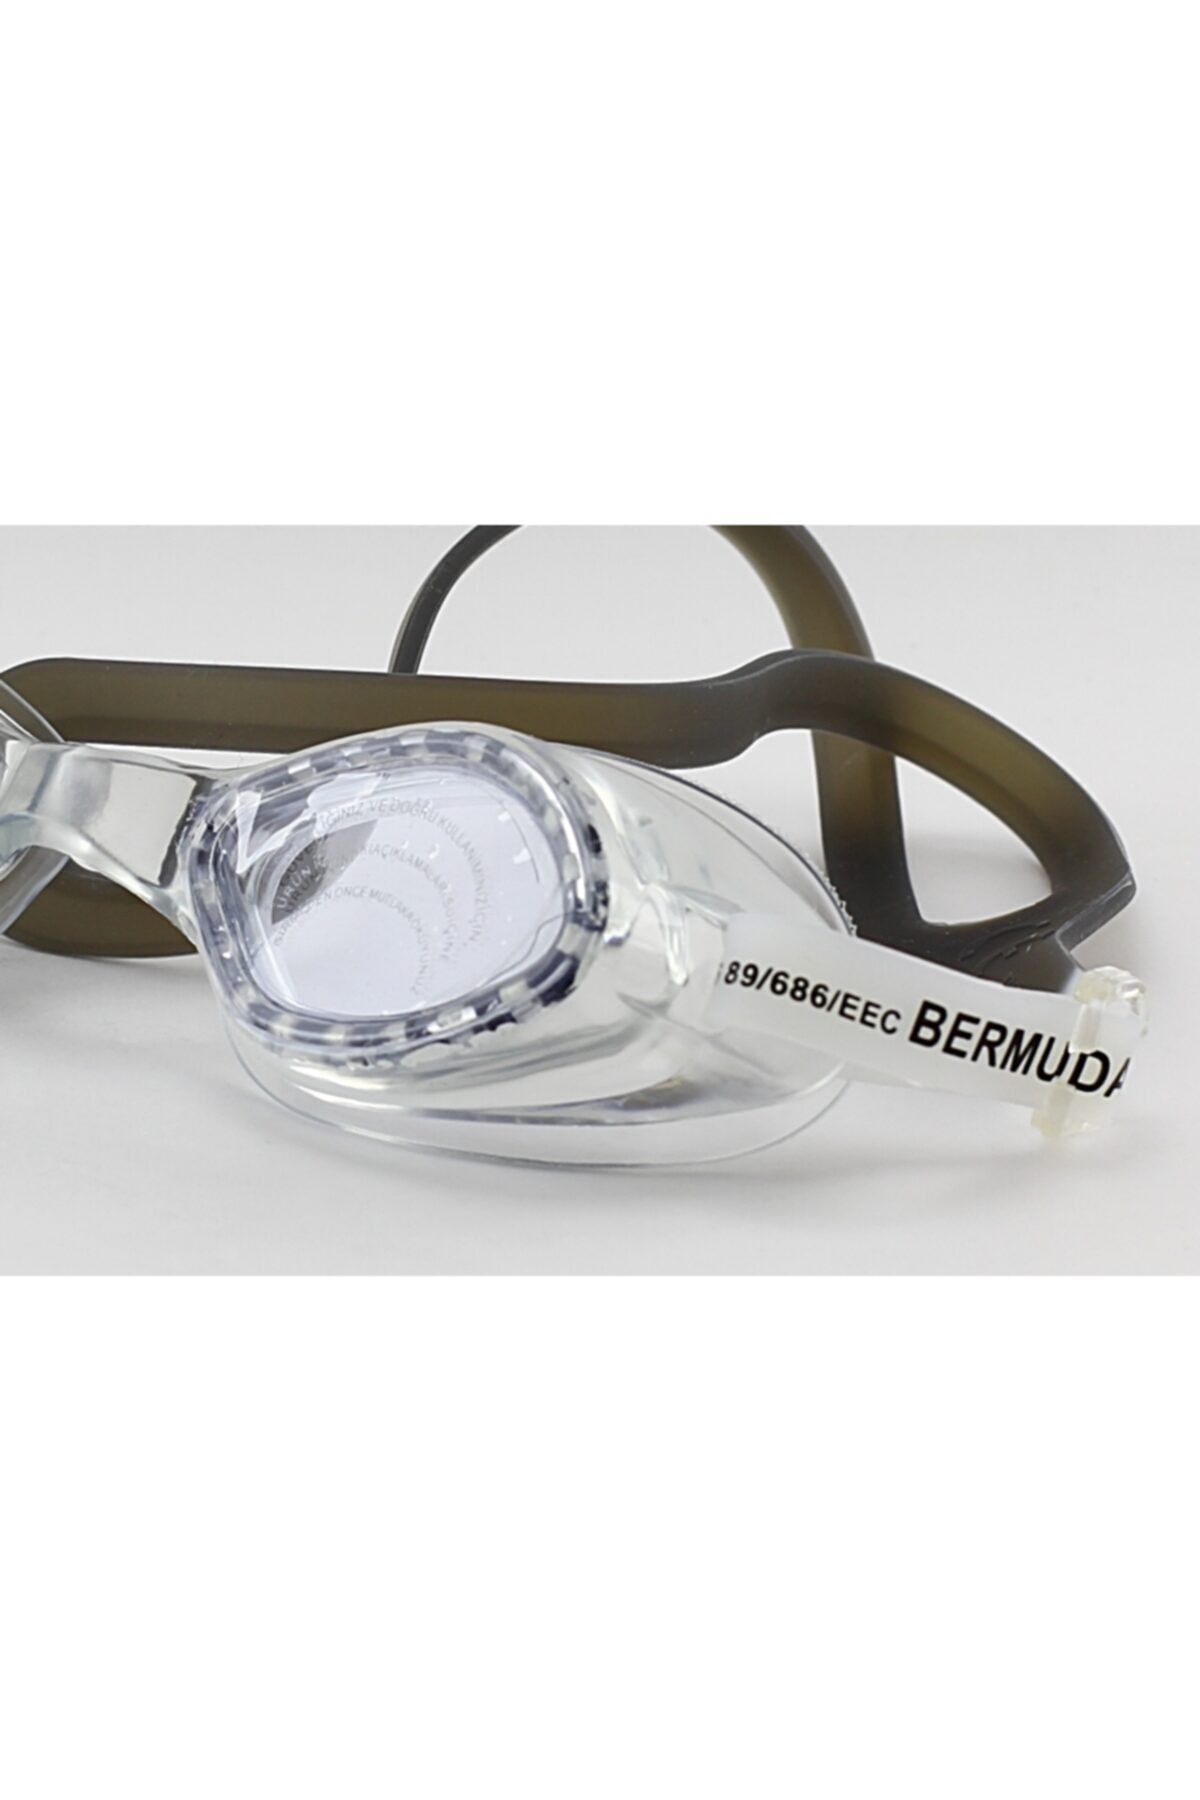 BERMUDA Aydeniz Toptan- 1840 Çocuk Silikon Yüzücü Gözlüğü Geniş Açı Fermuarlı Çantalı